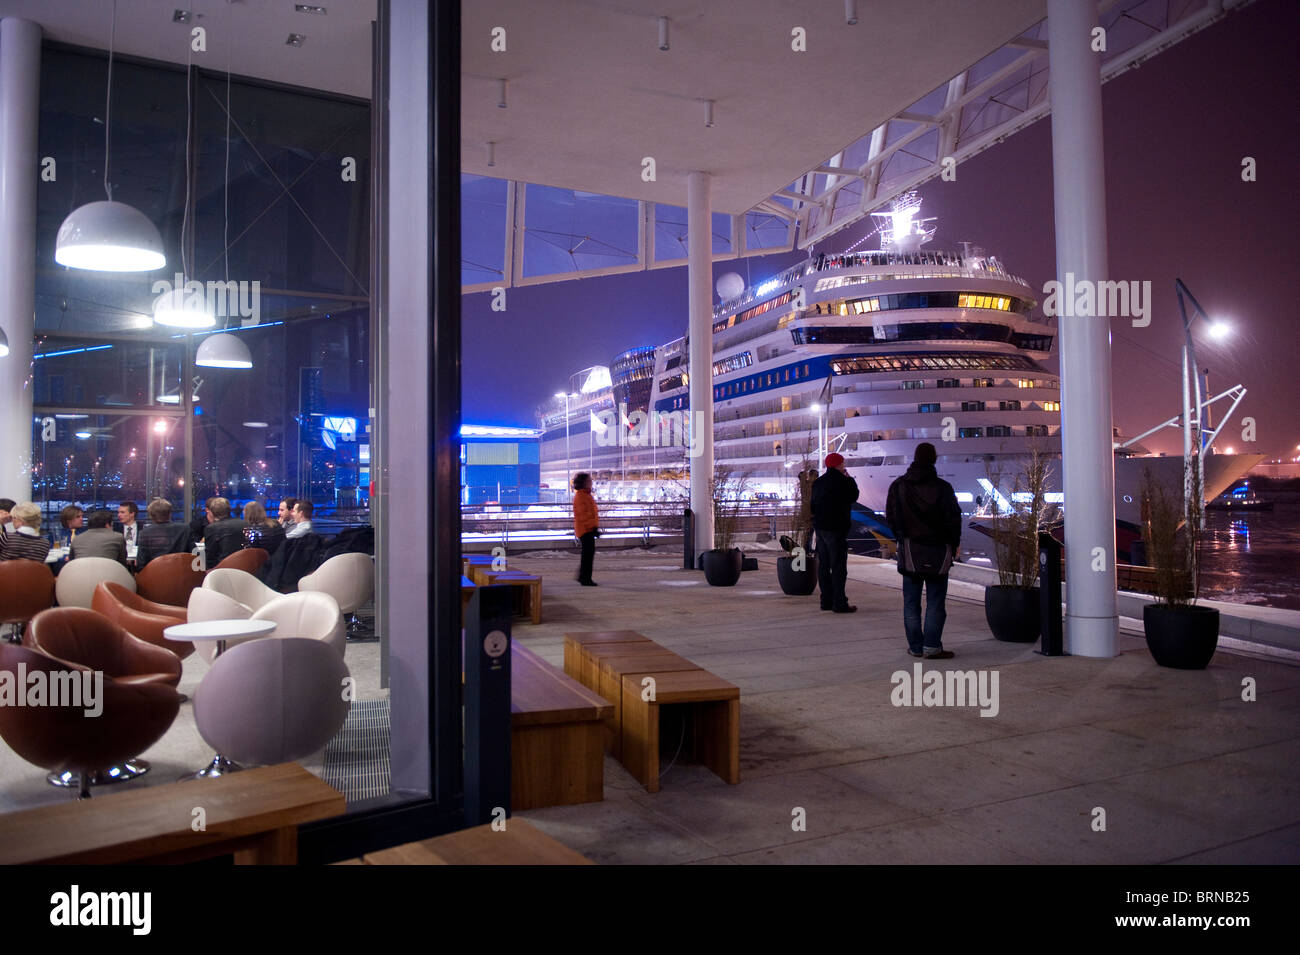 Europe Allemagne Hambourg, Hafencity , new Harbour City , terminal de croisière avec navire à passagers Aida Blu dans la nuit Banque D'Images